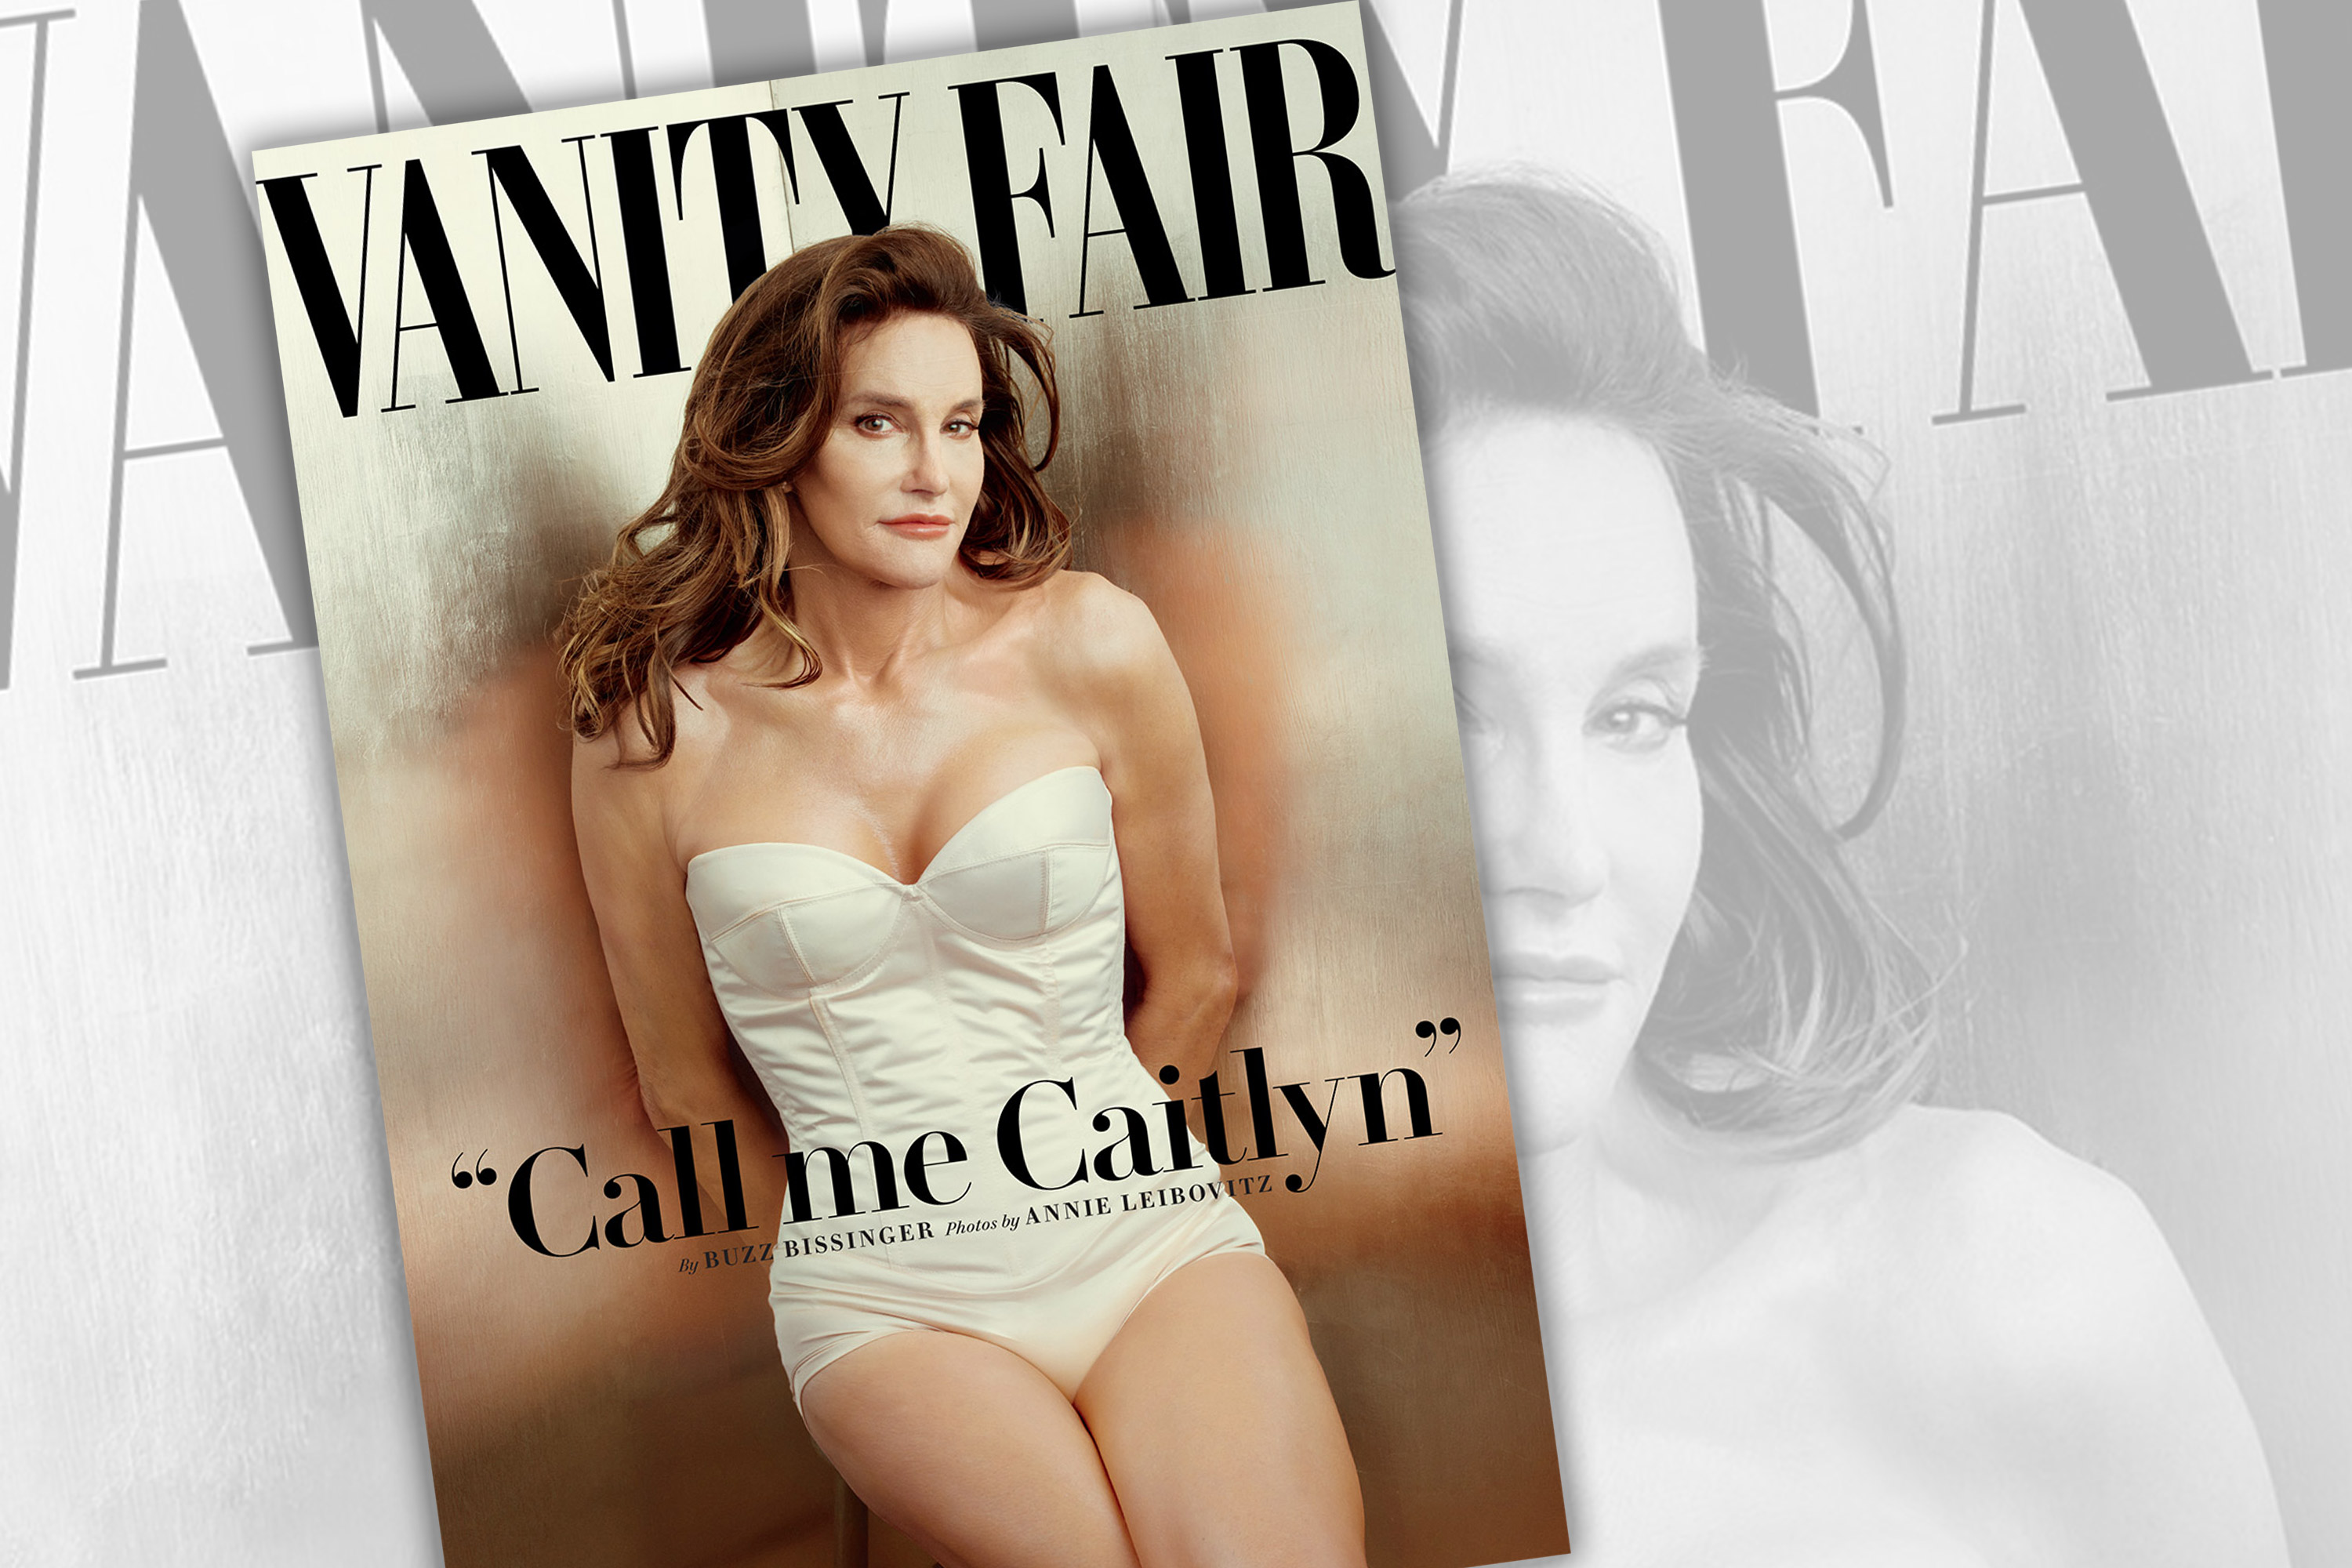 Caitlyn Jenner y su portada en la revista Vanity Fair es un momento decisivo en la visibilidad trangénero, según internet, pero activistas dicen que aún hay mucho por hacer.